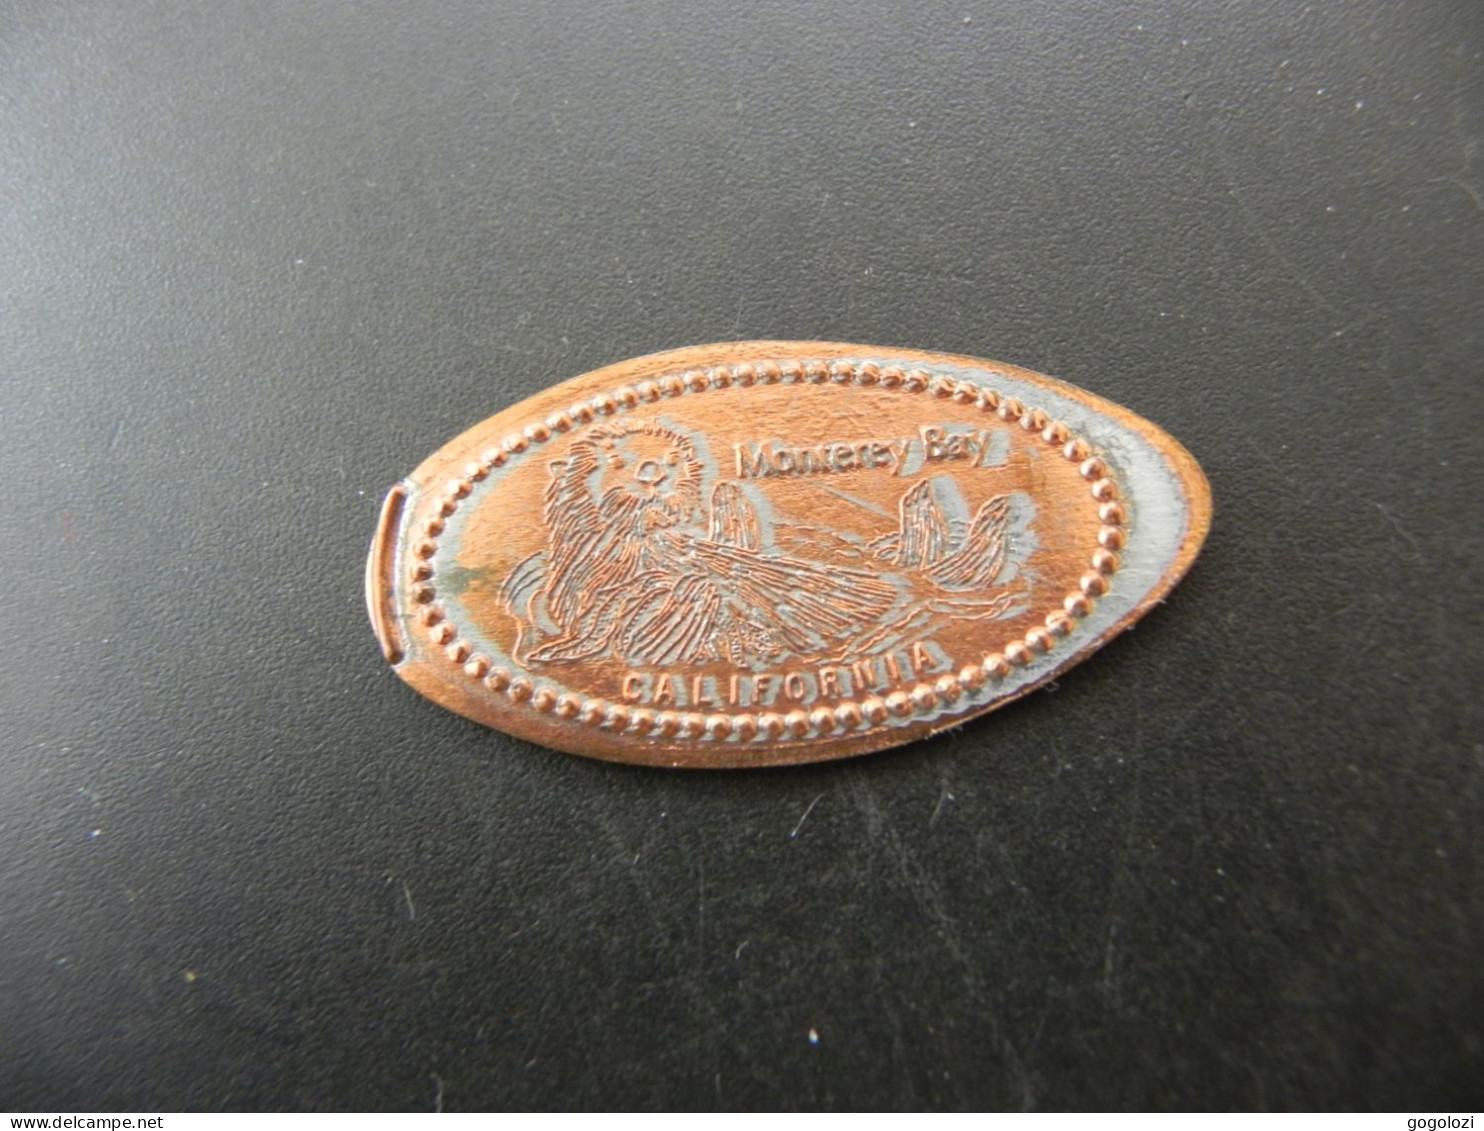 Jeton Token - Elongated Cent - USA - Monterey Bay California Sea Otter - Monedas Elongadas (elongated Coins)